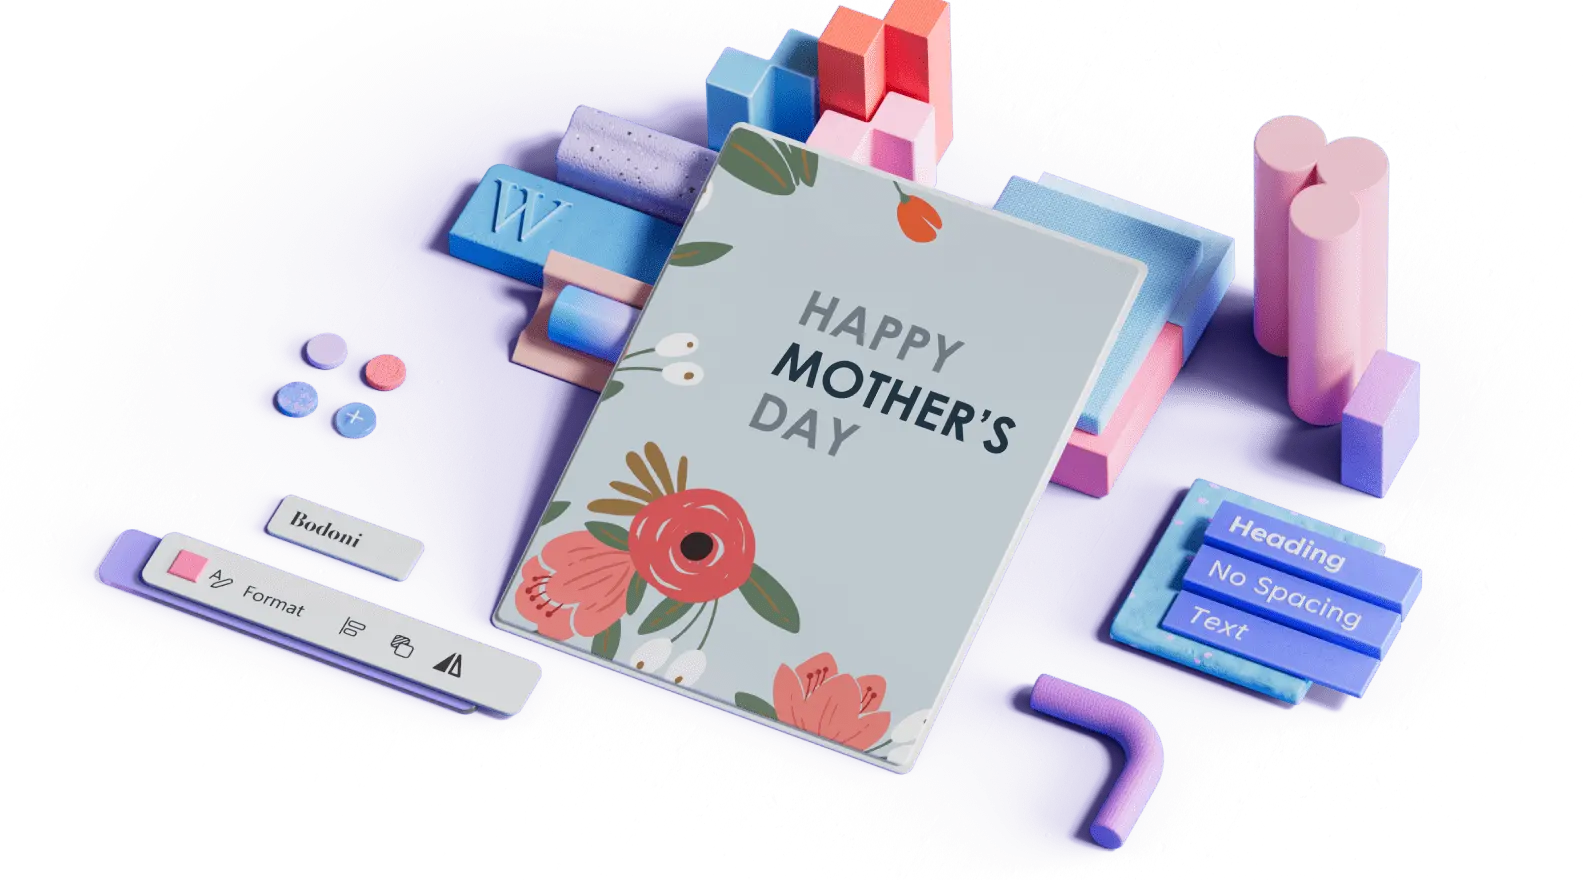 Szablon kwiatowej karty na Dzień Matki otoczony elementami projektu 3D